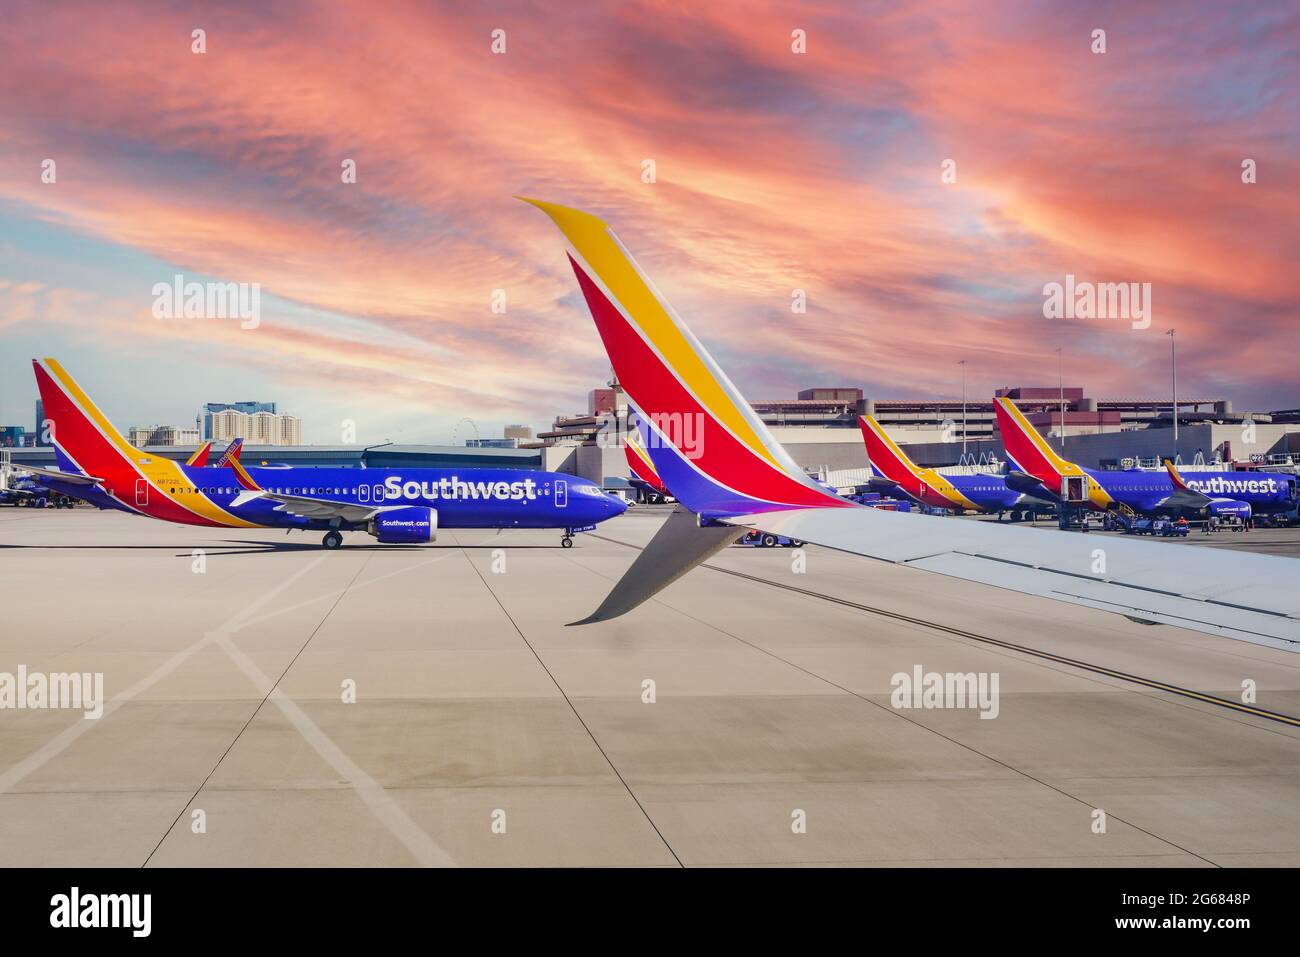 Une formation d'avions Southwest Airlines aux portes du terminal de l'aéroport international McCarran de Las Vegas, Nevada, avec des casinos au loin Banque D'Images